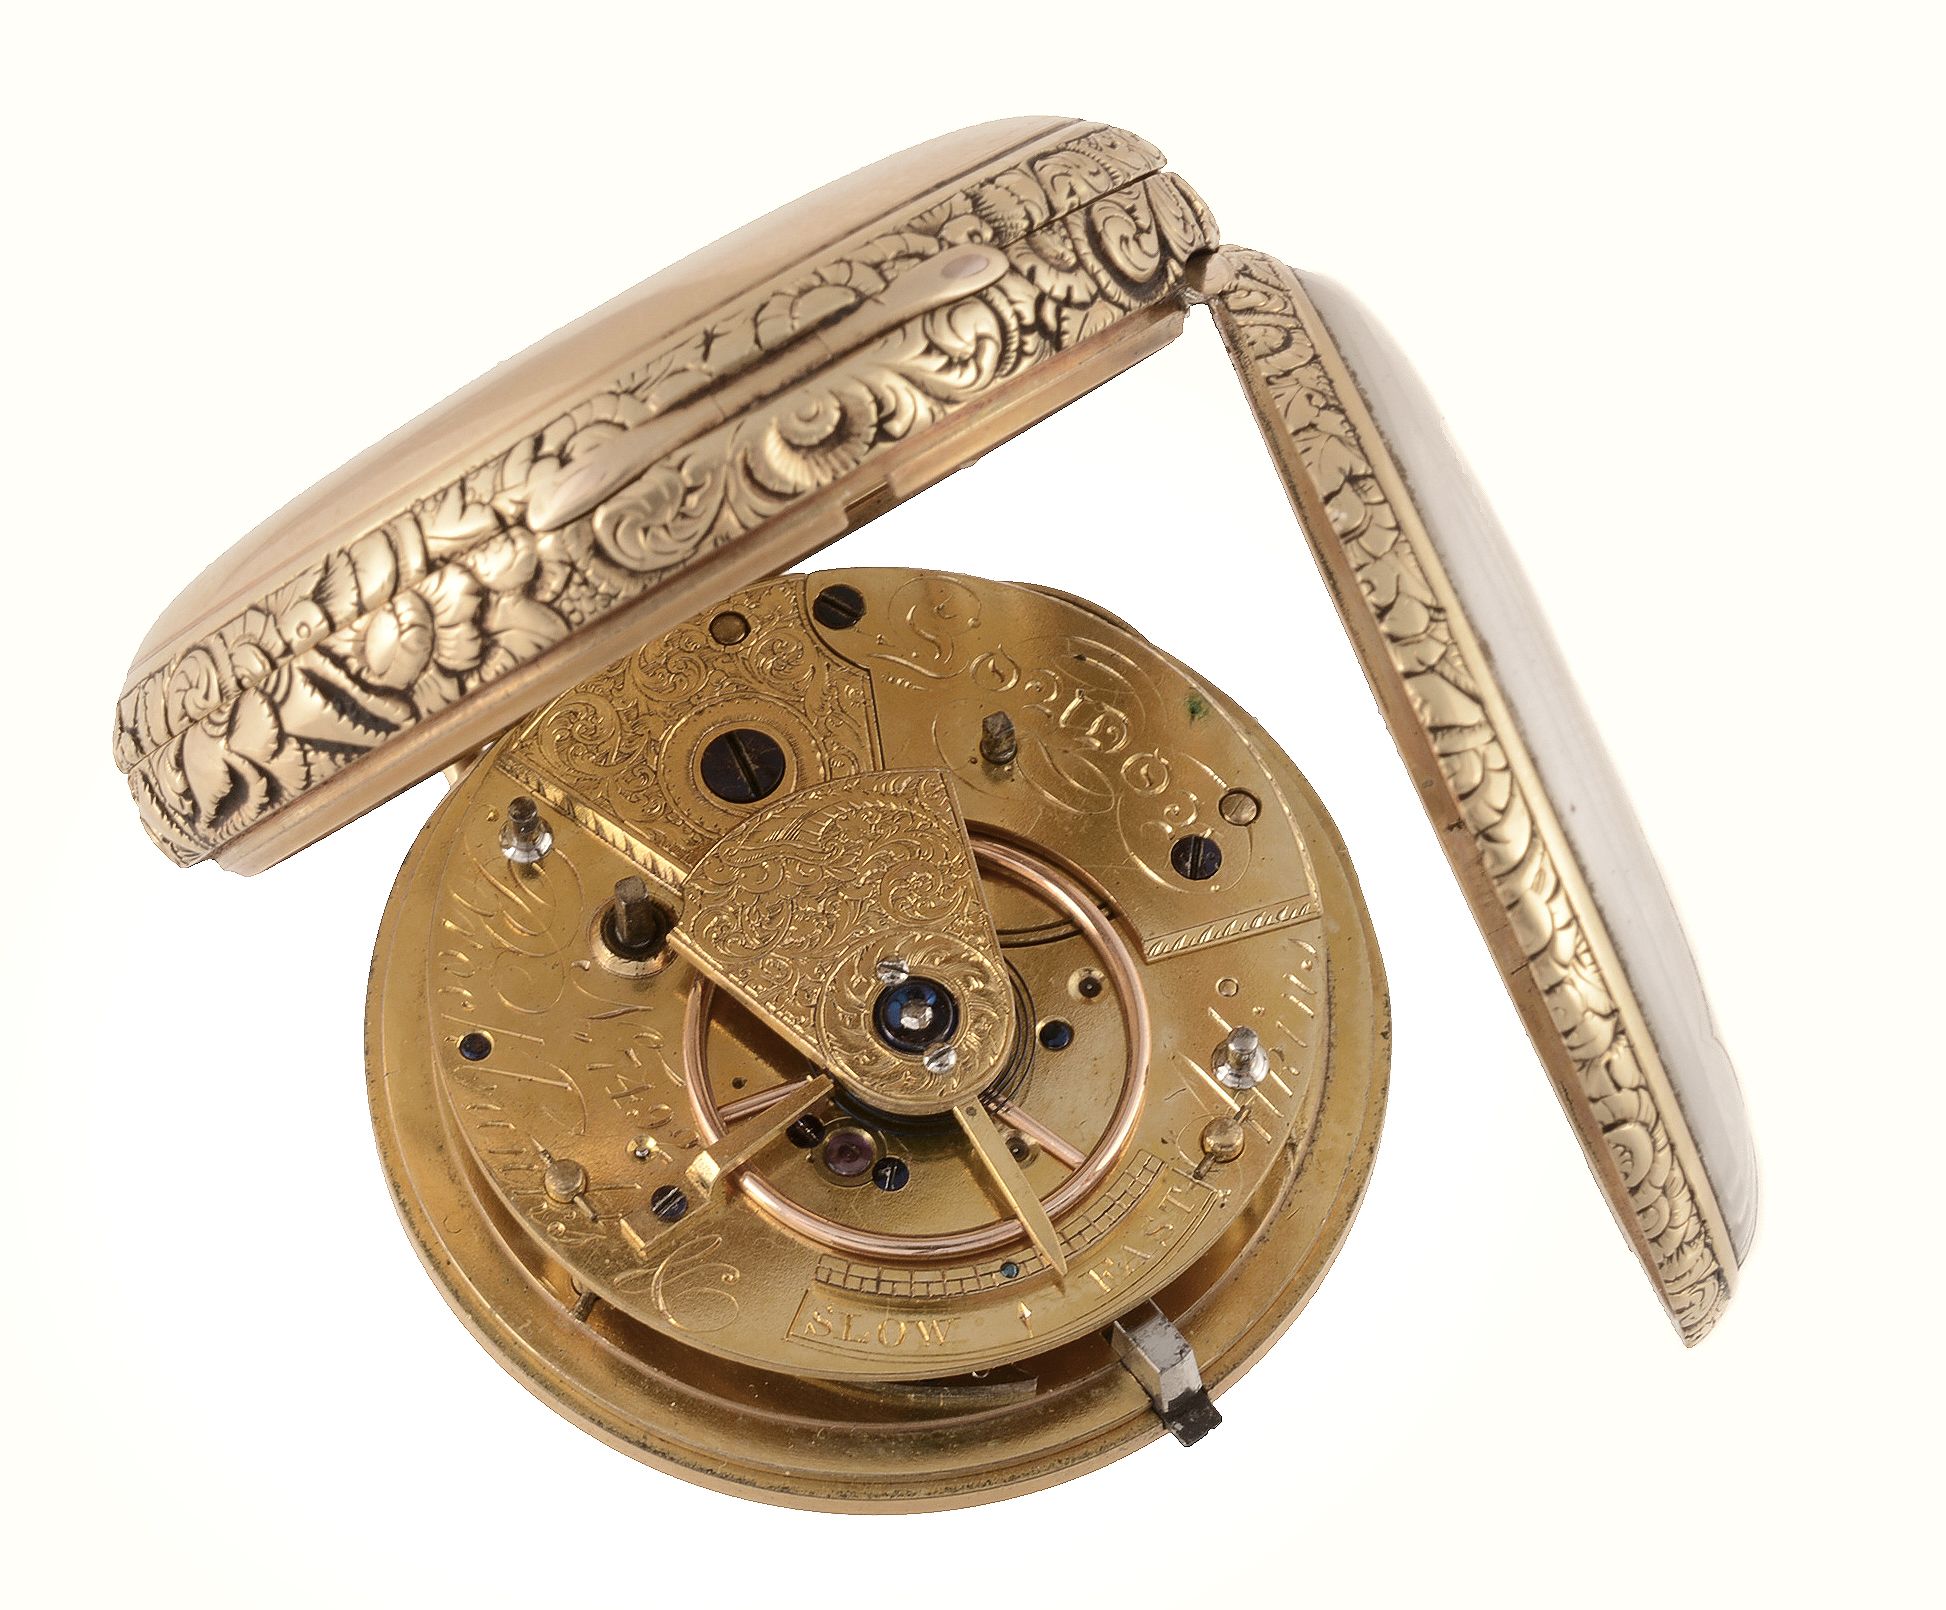 An 18 carat gold open face pocket watch, hallmarked London 1823  An 18 carat gold open face pocket - Image 2 of 2